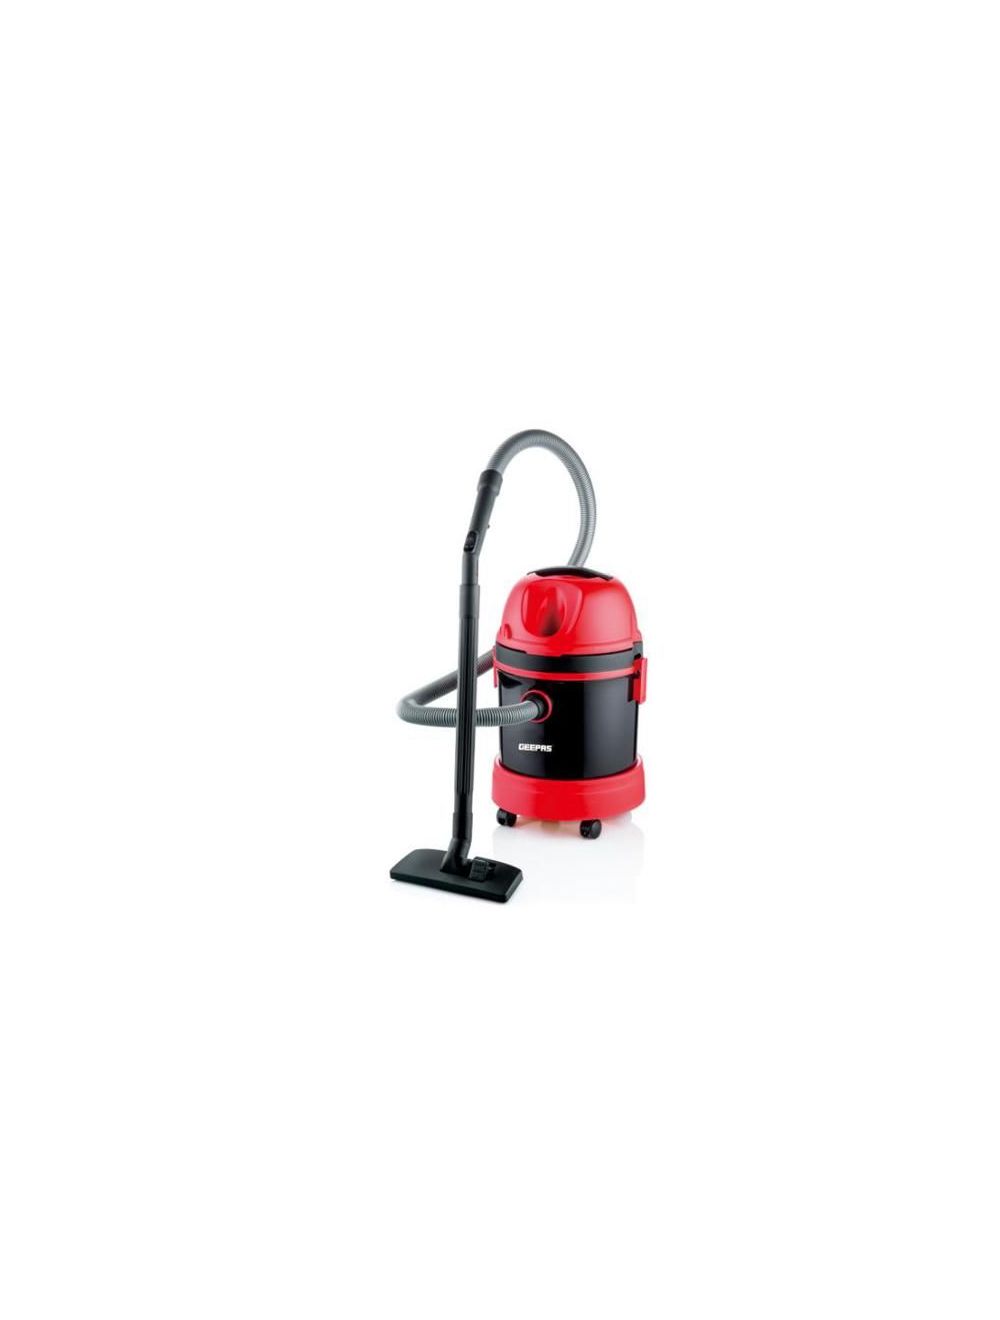 Geepas GVC19026 2800W Dry & Wet Vacuum Cleaner